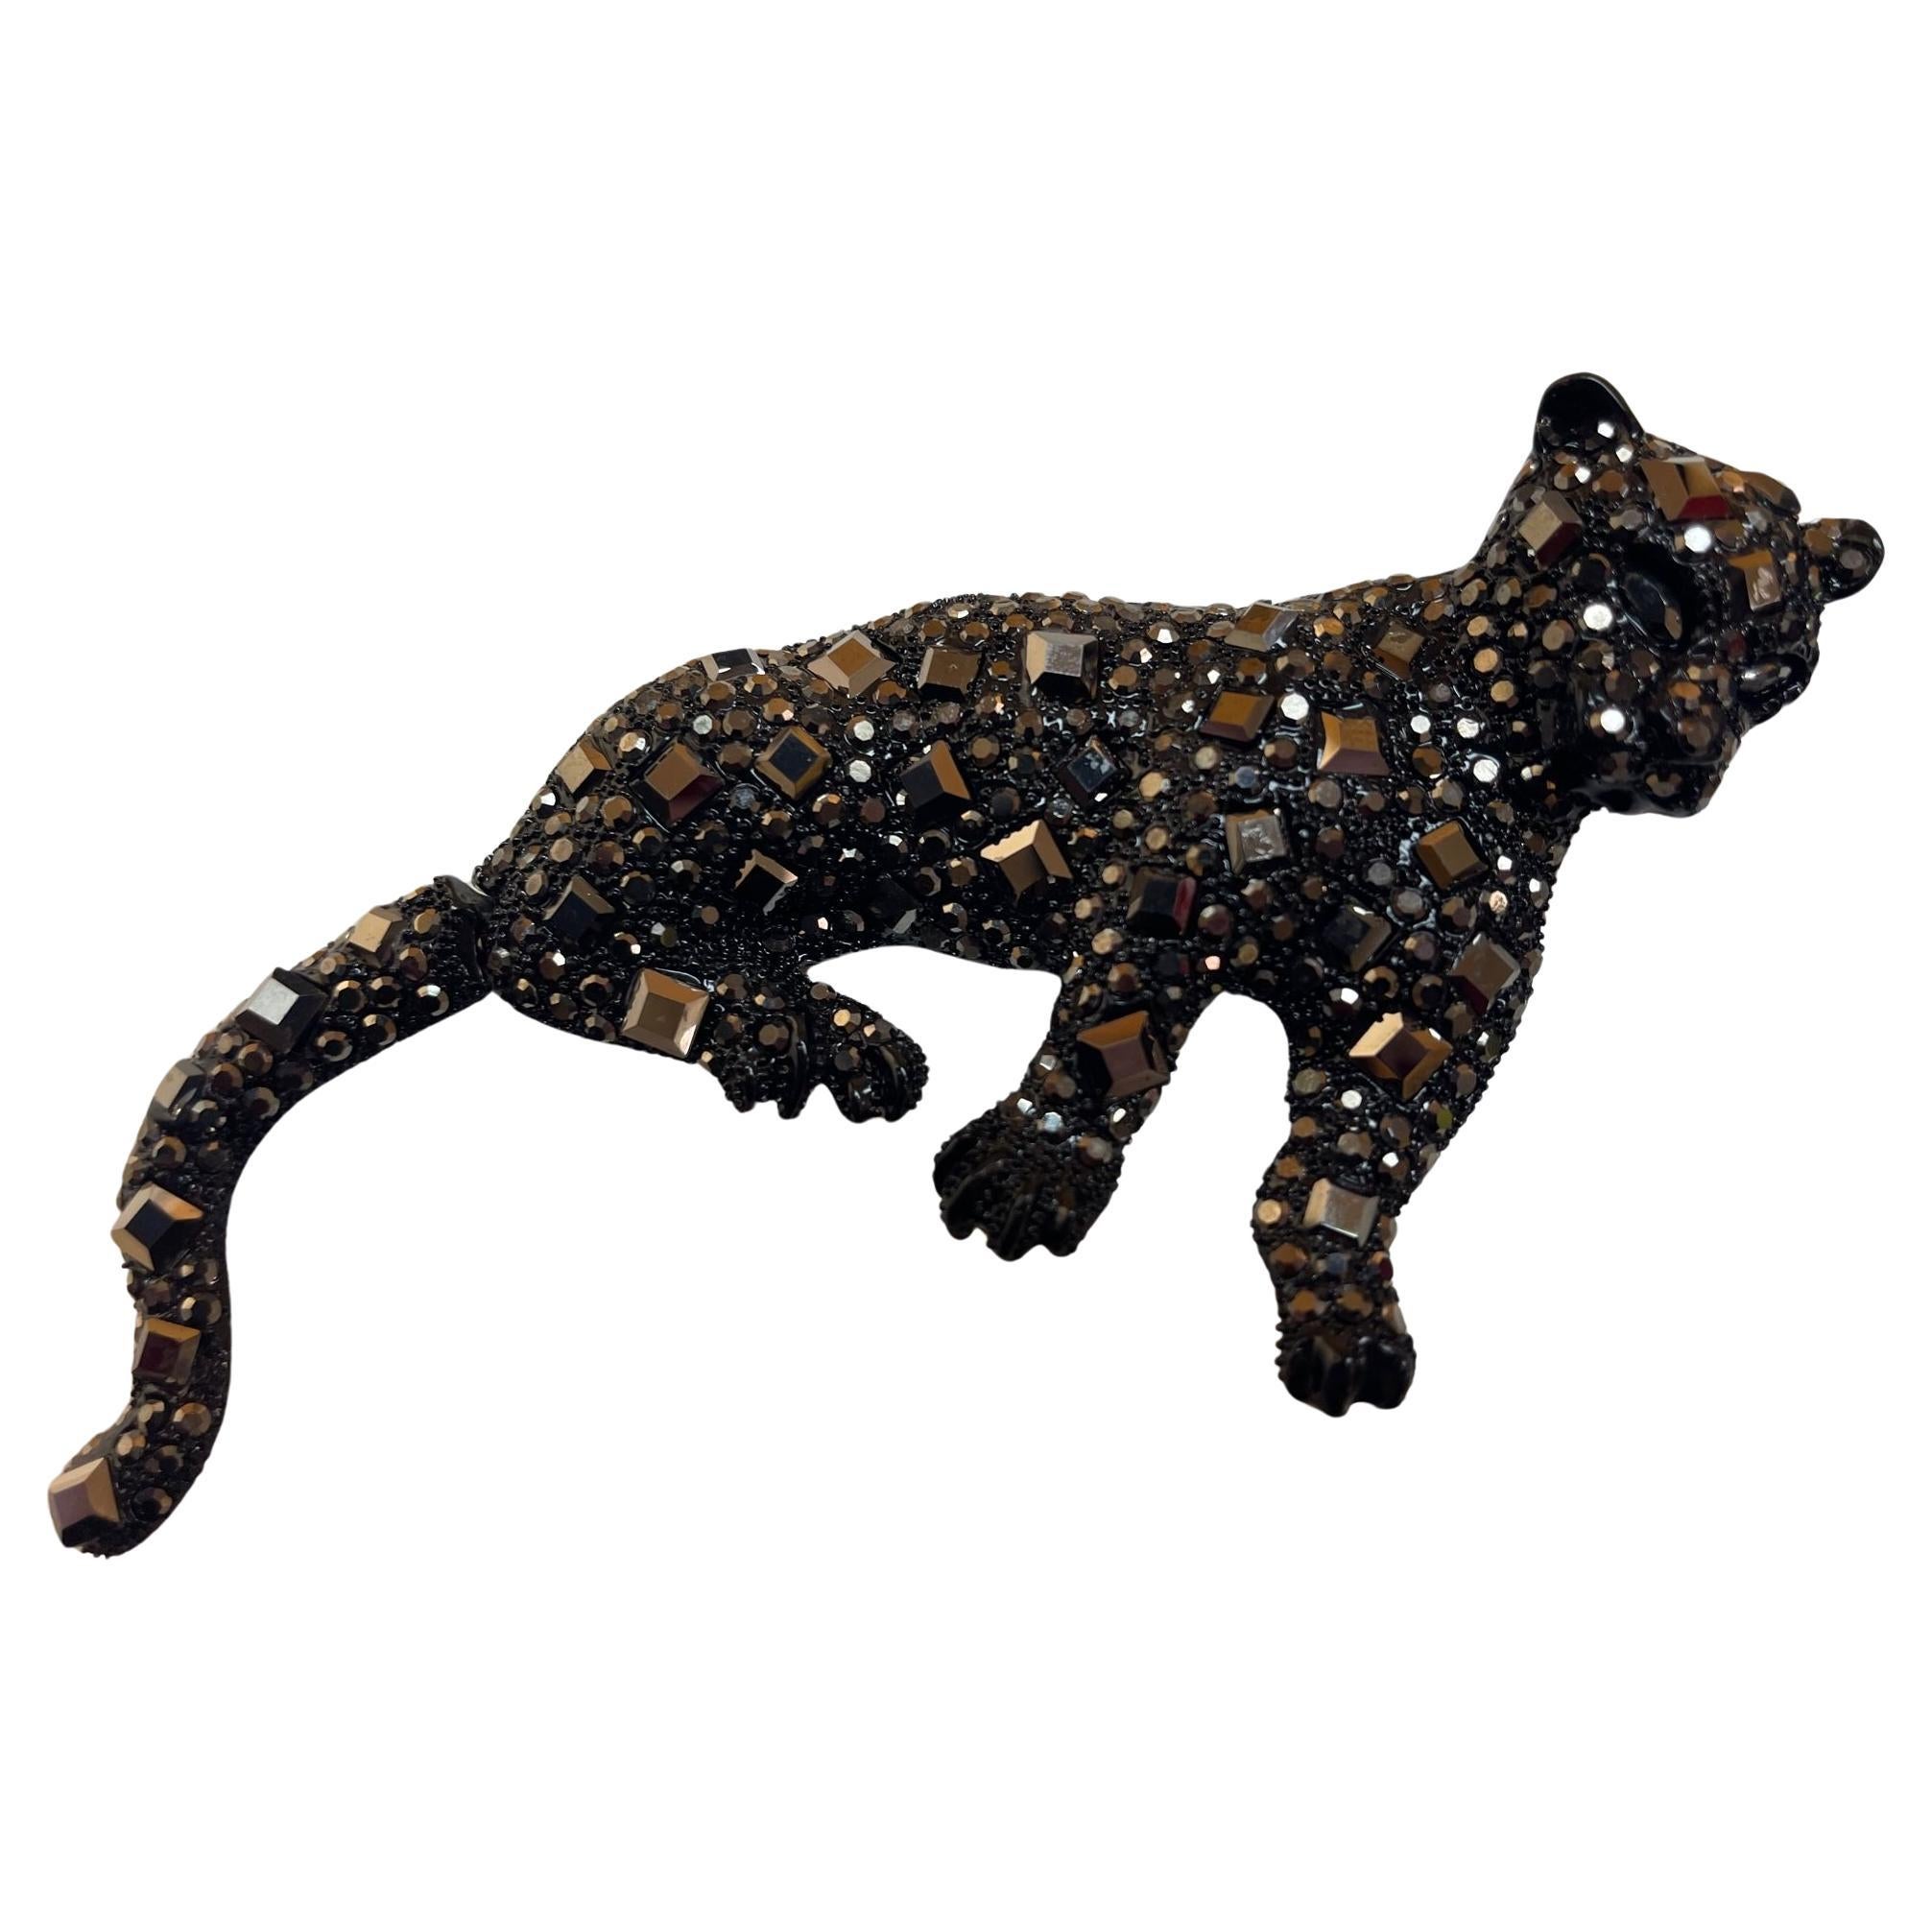 Big Black Cheetah Cat Designer Brooch Pin Pendant